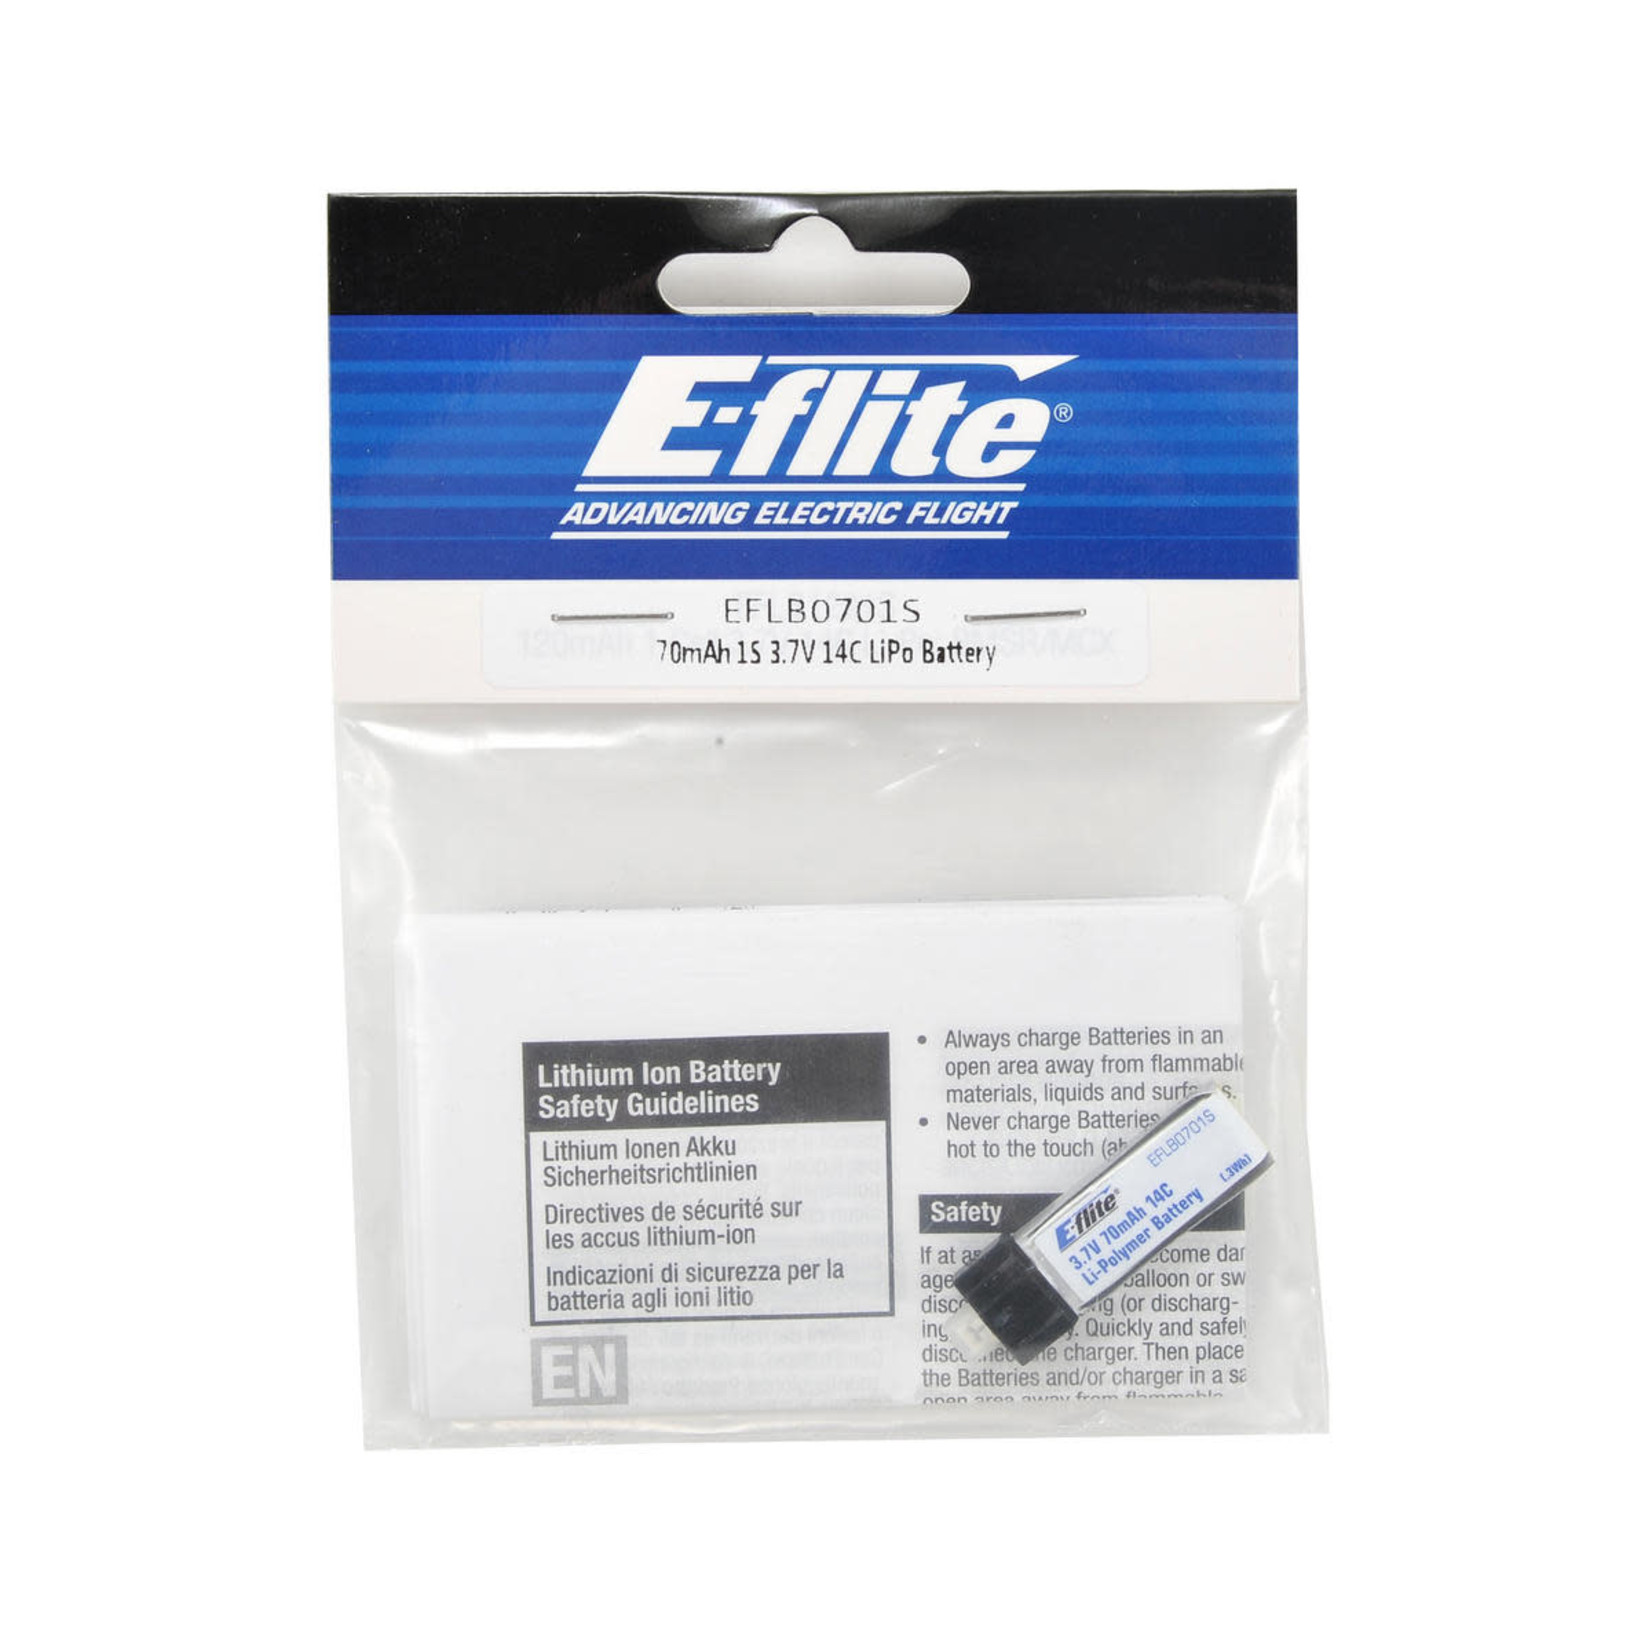 E-flite E-flite 1S LiPo Battery 14C (3.7V/70mAh) #EFLB0701S